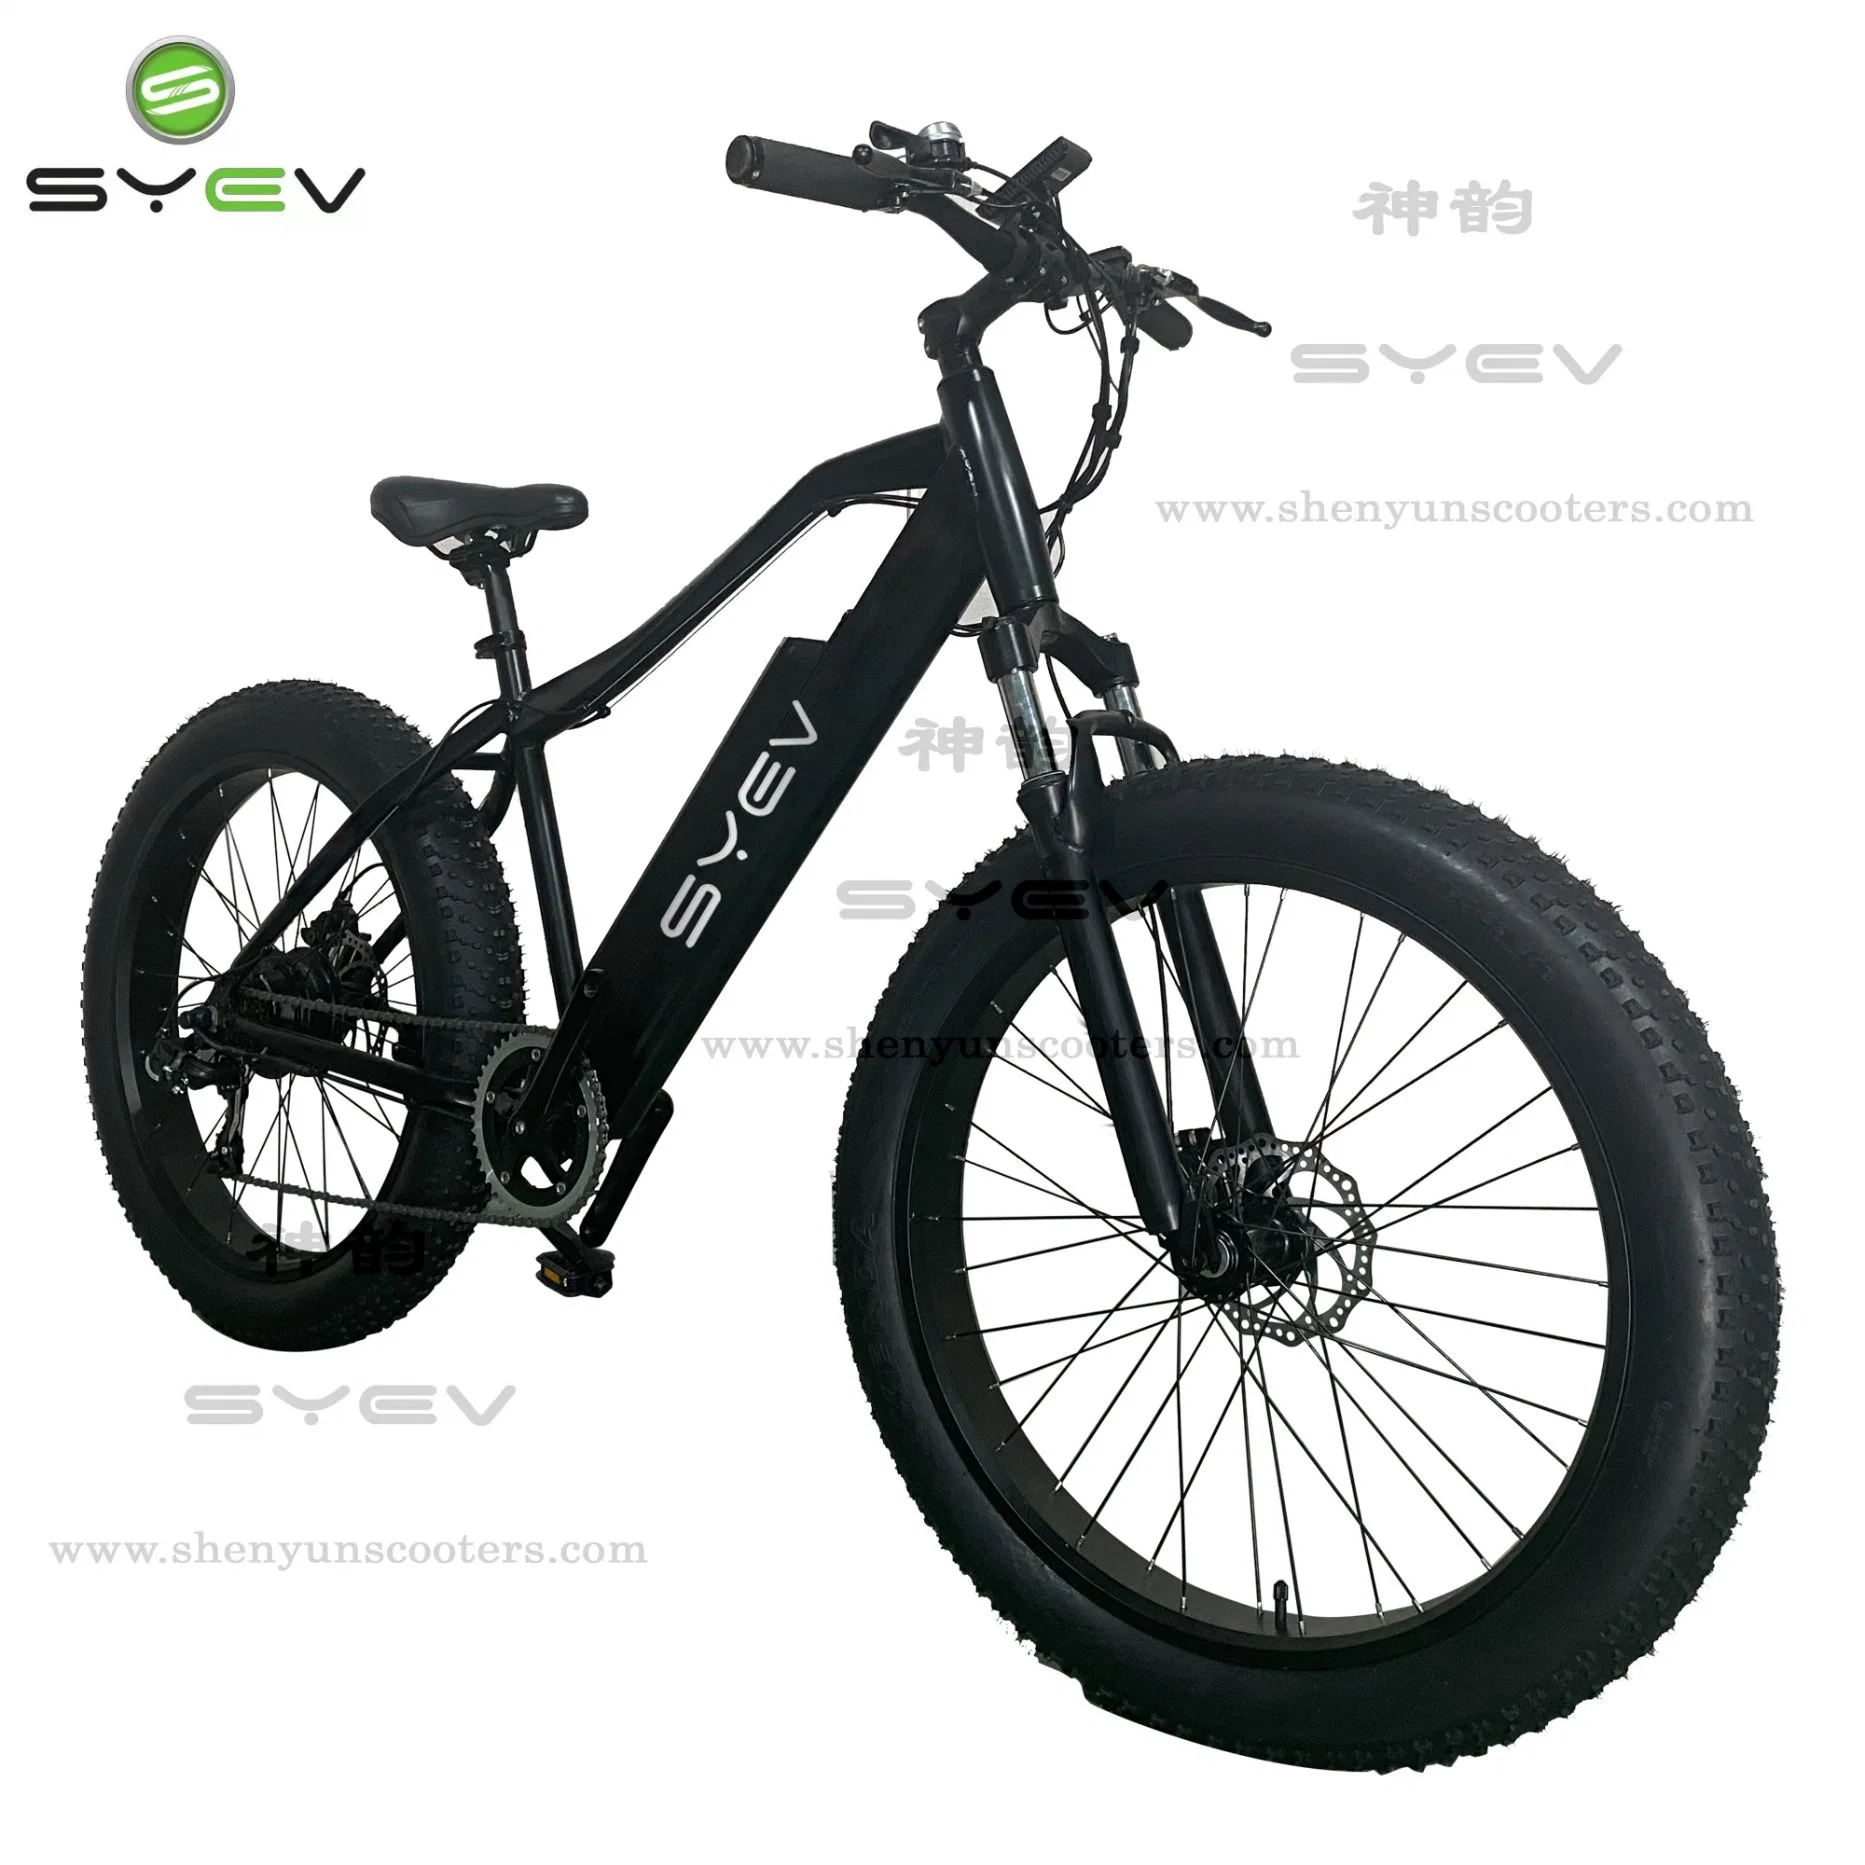 Wuxi Shenyun Nueva fábrica de 26 pulgadas de alto rendimiento de los neumáticos de la grasa de la montaña de aleación de aluminio bicicleta eléctrica para la Juventud